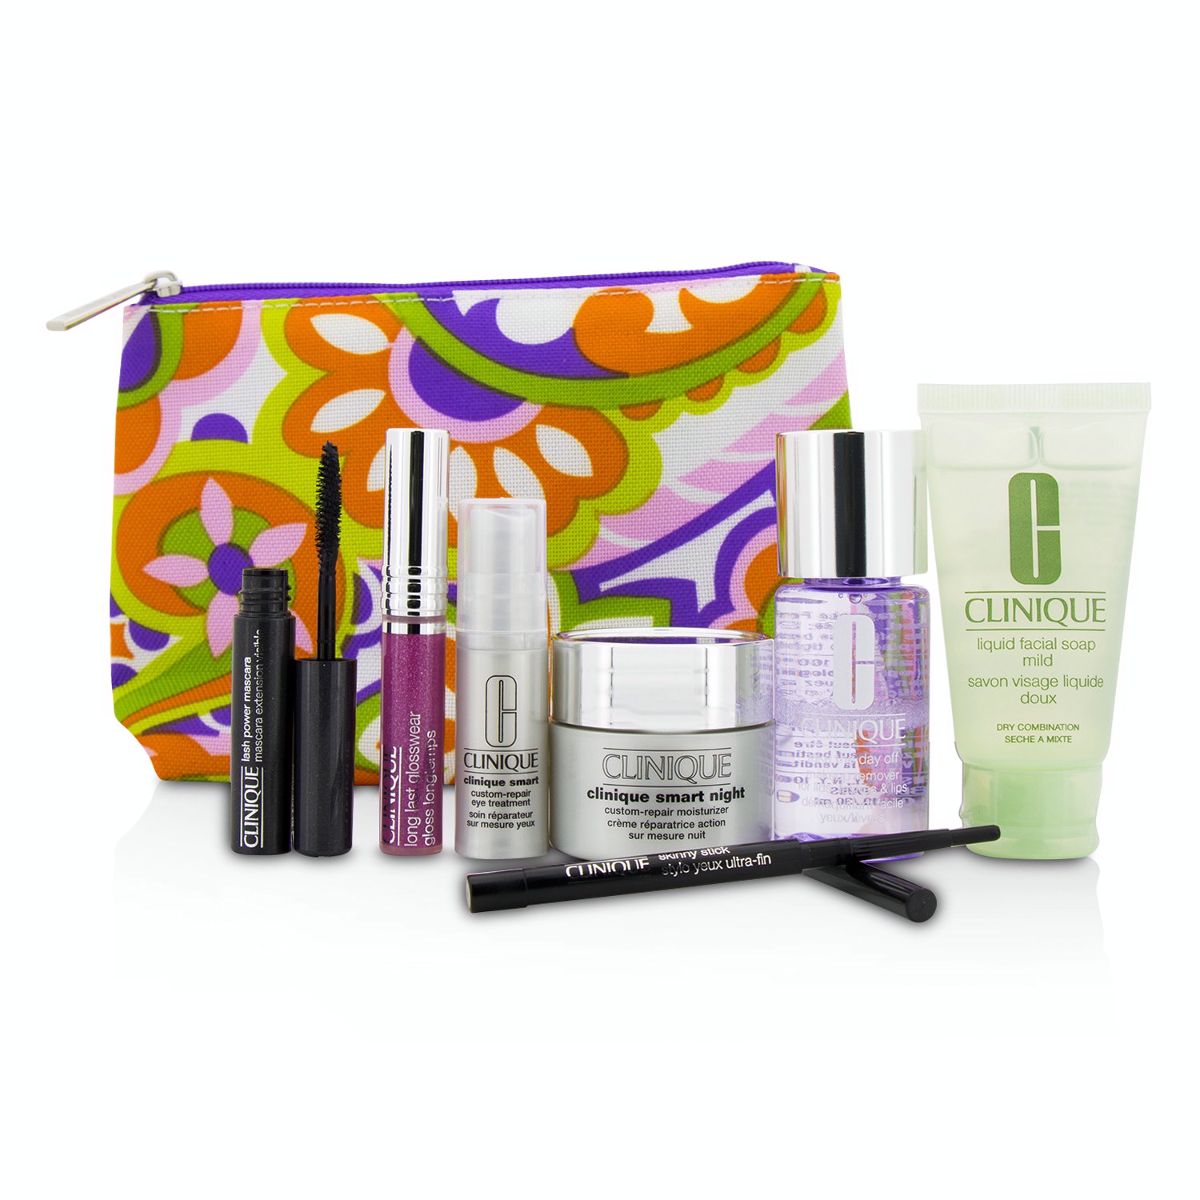 Travel Set: Make Up Remover+Liquid Facial Soap+Cream+Eye Treatment+Skinny Stick+Mascara+Lip Gloss+Bag Clinique Image